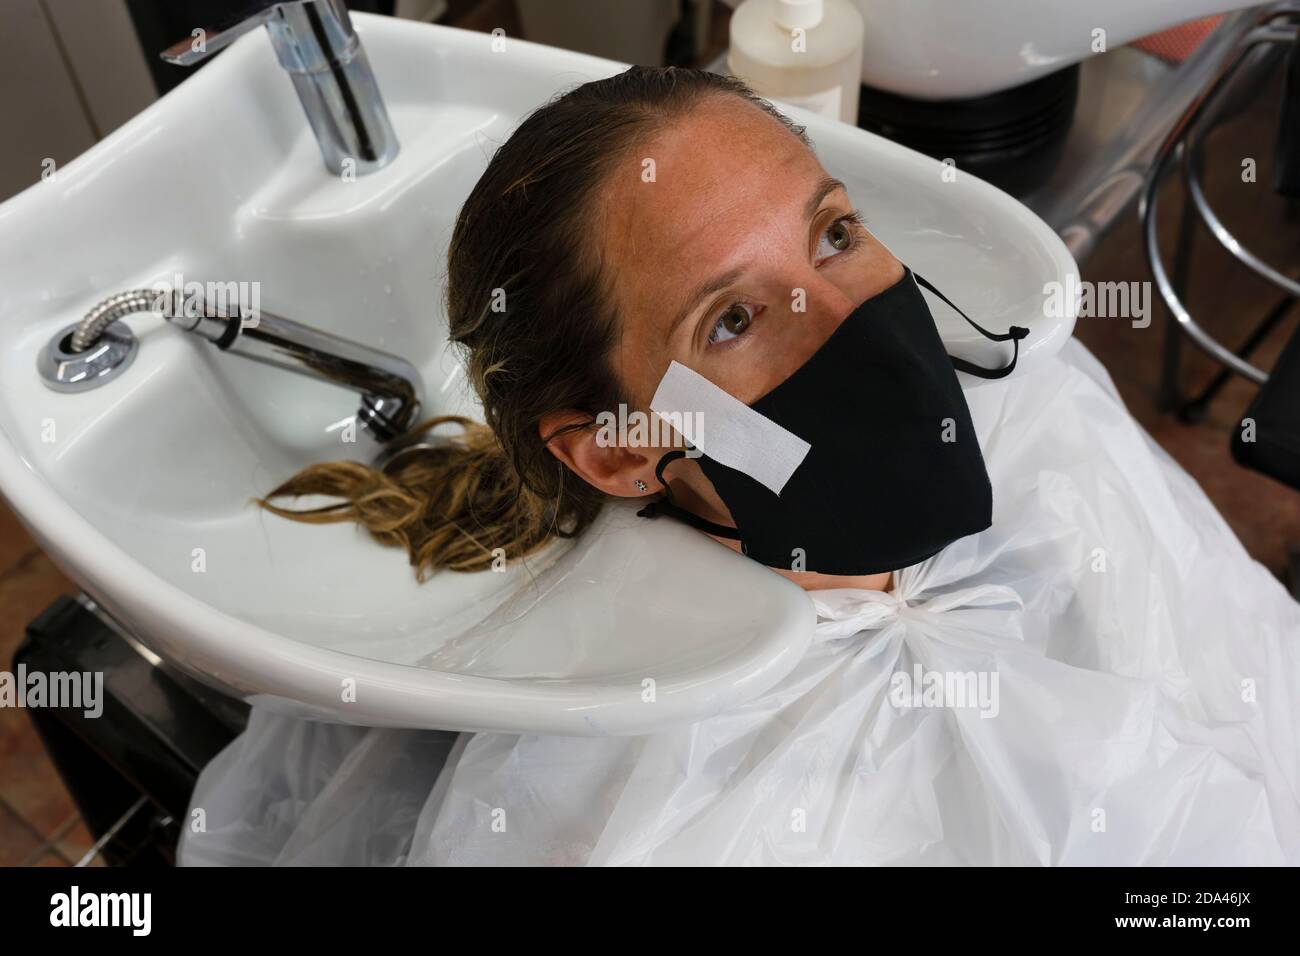 Donna che indossa una maschera medica di protezione al parrucchiere salon.customers , lavoratori e misure aziendali contro il concetto di coronavirus, nuova pandemia normale Foto Stock